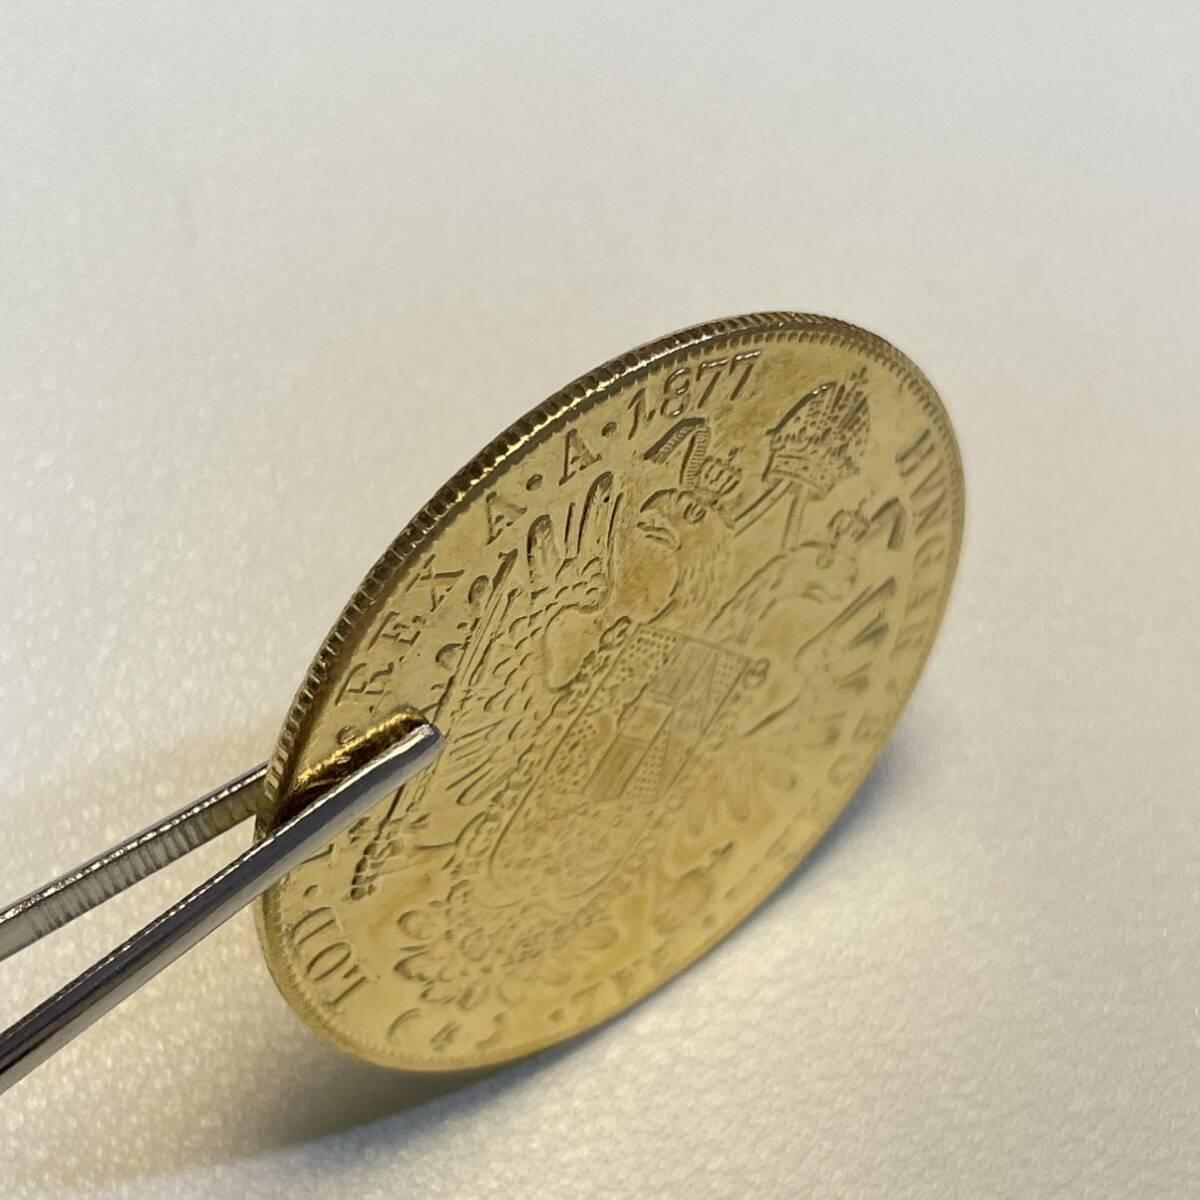 オーストリア帝国 硬貨 古銭 フランツ・ヨーゼフ 1 世 1877年 クラウン 国章 紋章 双頭の鷲 4ダカット コイン 重15.07g_画像3